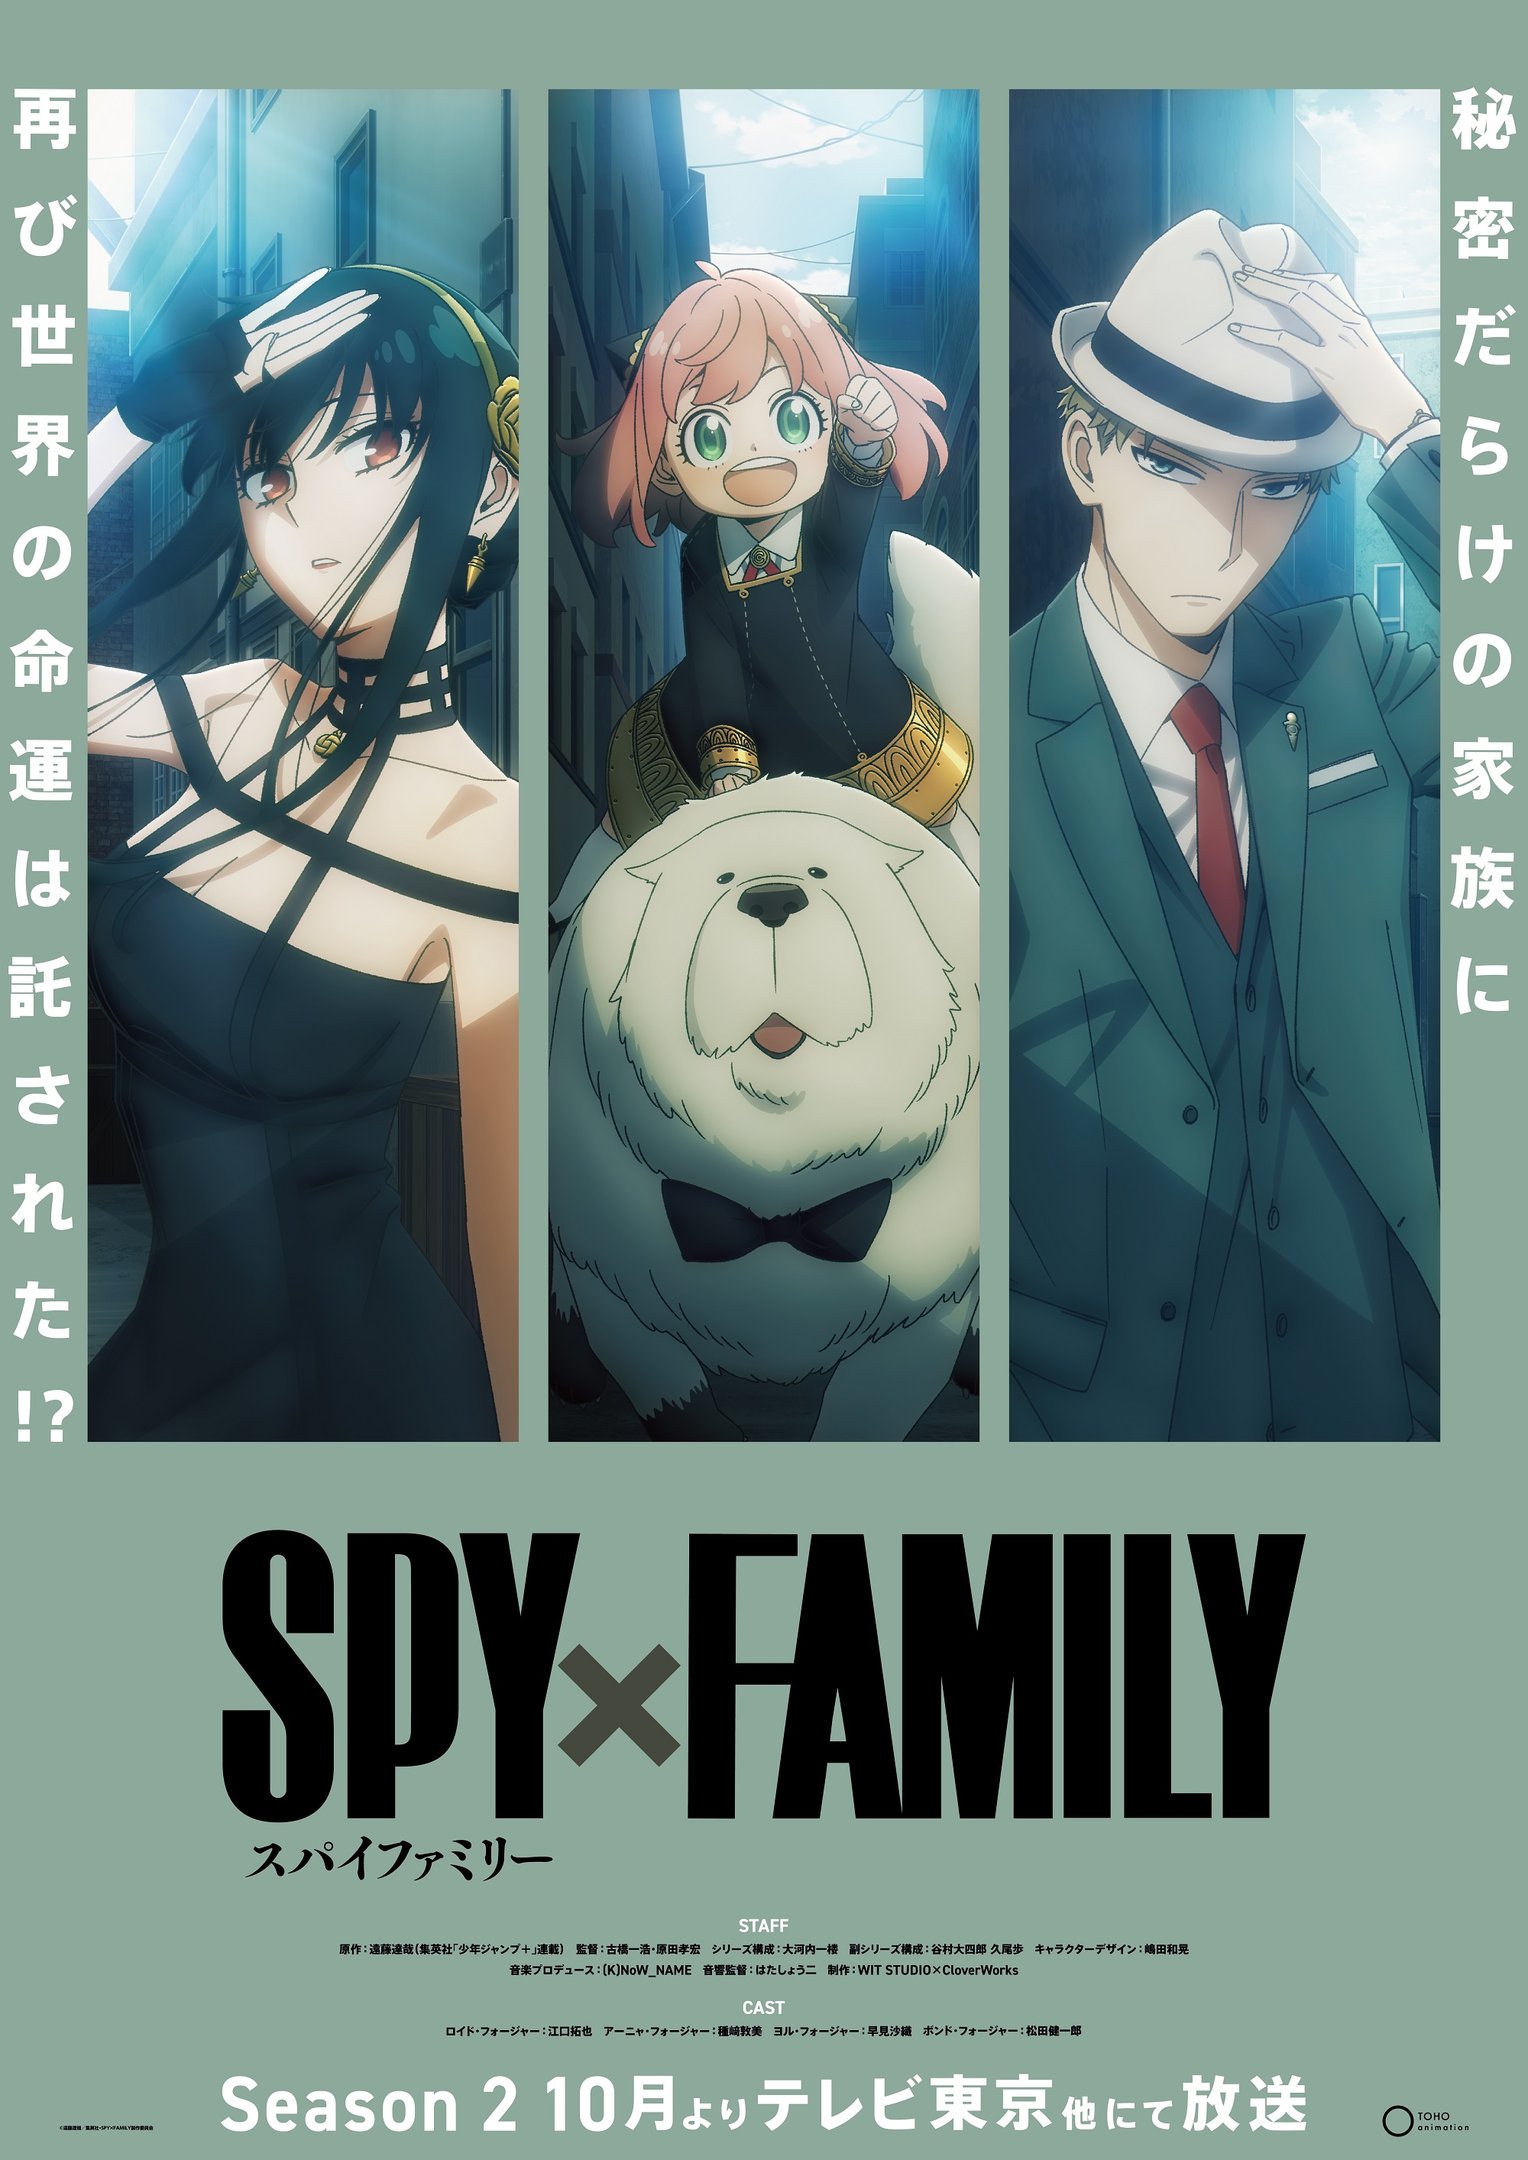 Spy x Family Temporada 2 - Episódio 1 - Onde assistir e horário de